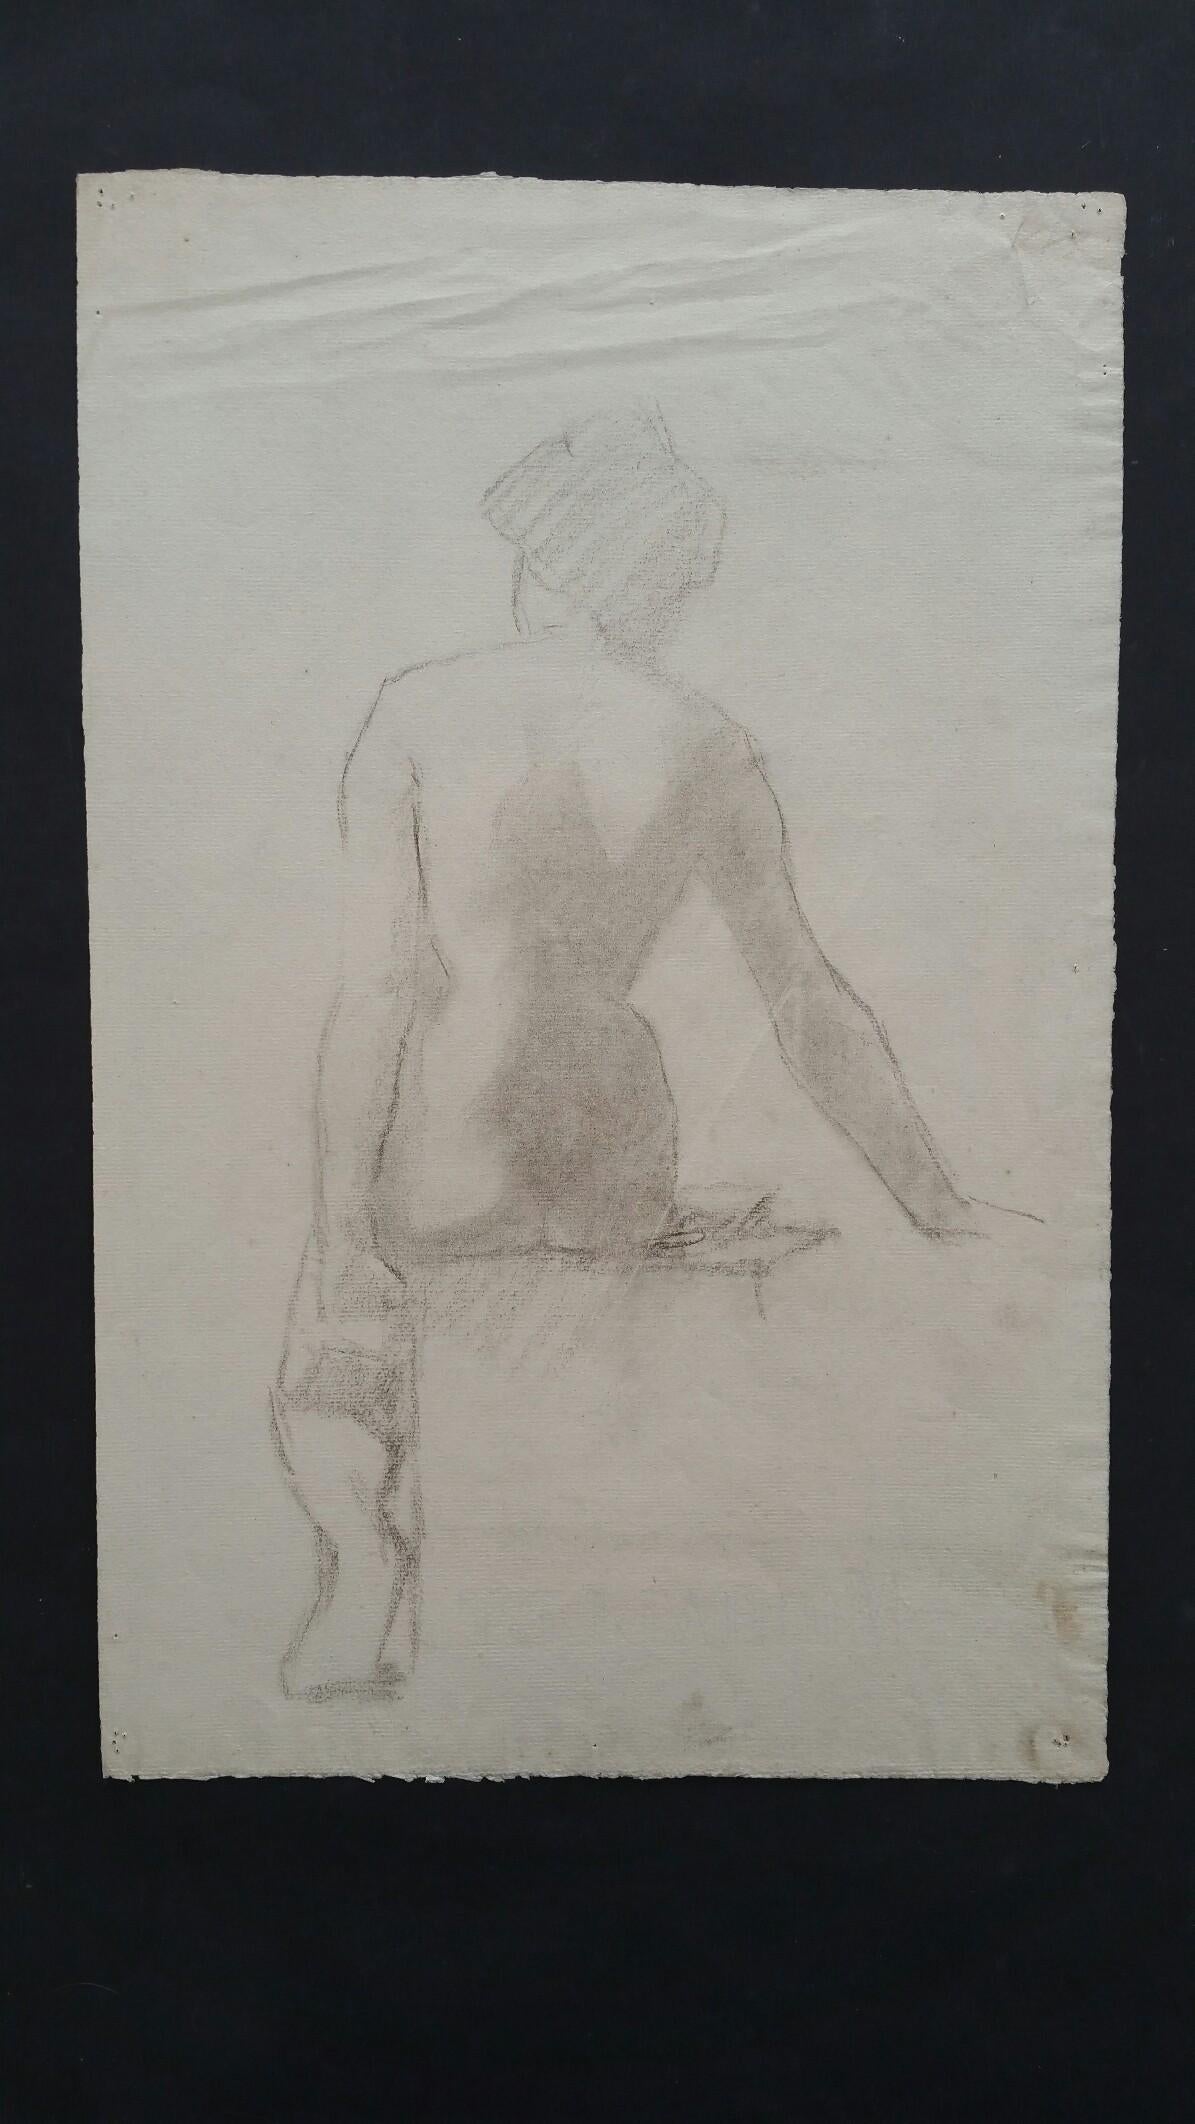 Croquis de portrait en graphite anglais d'une femme nue assise d'une vue arrière - Art de Henry George Moon